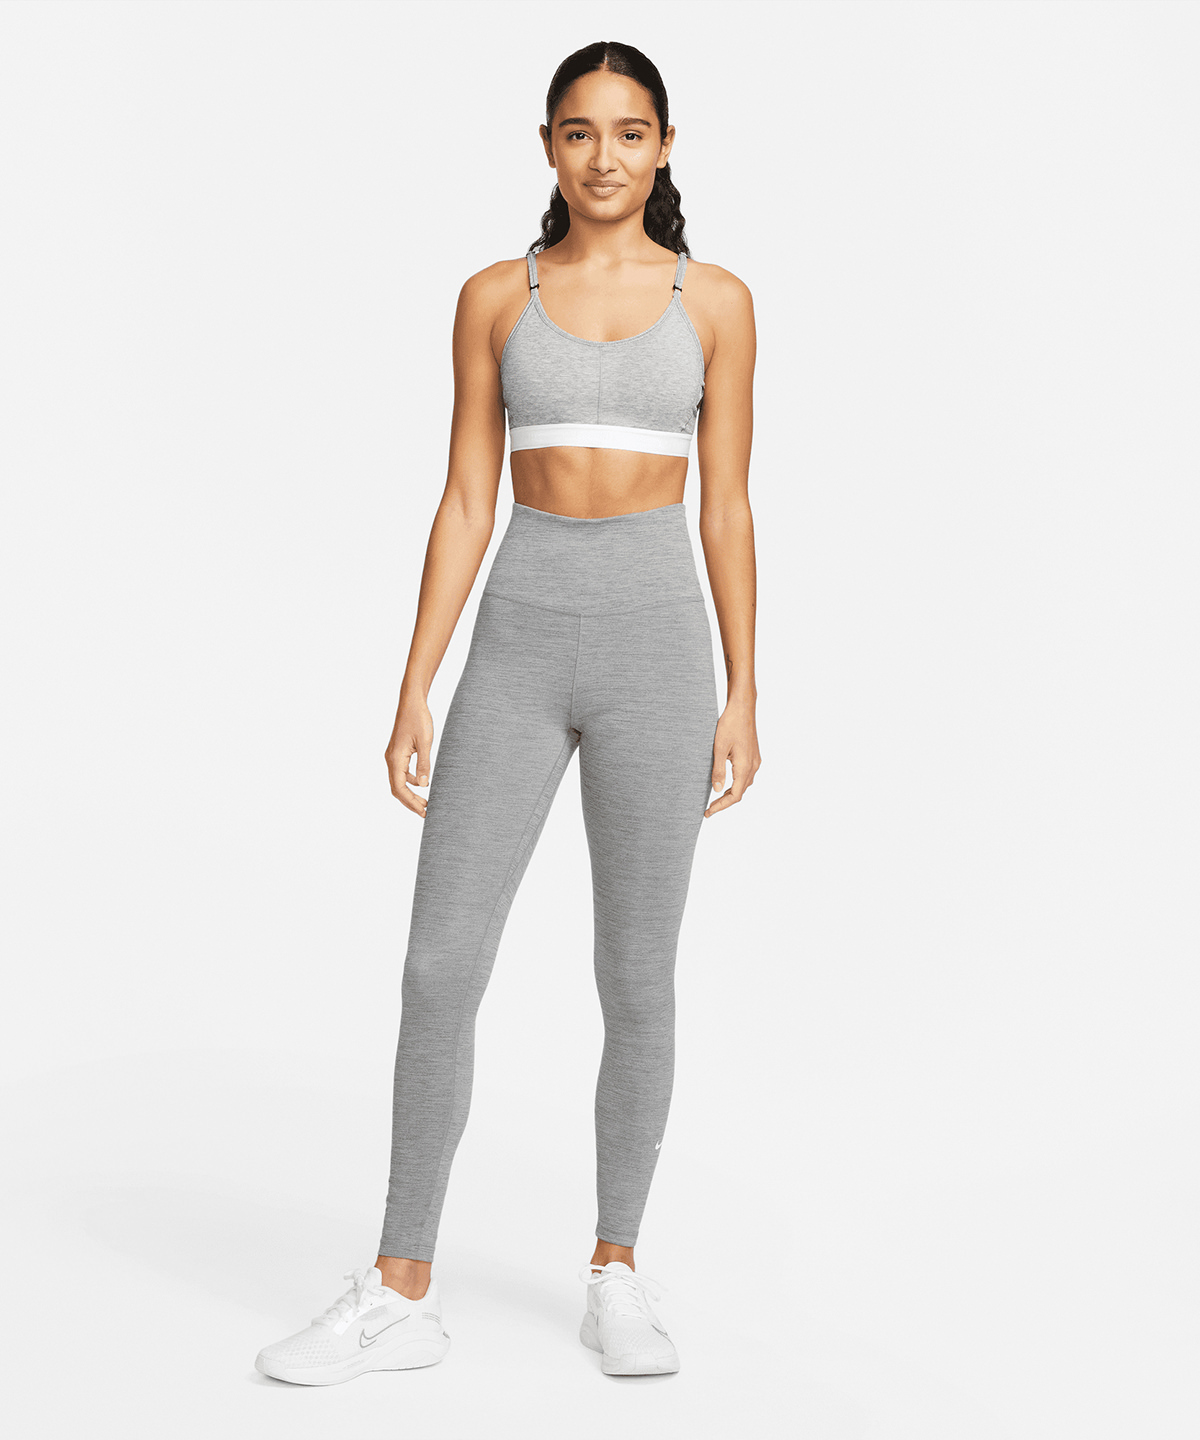 Womens Nike One Dri-FIT high-rise leggings